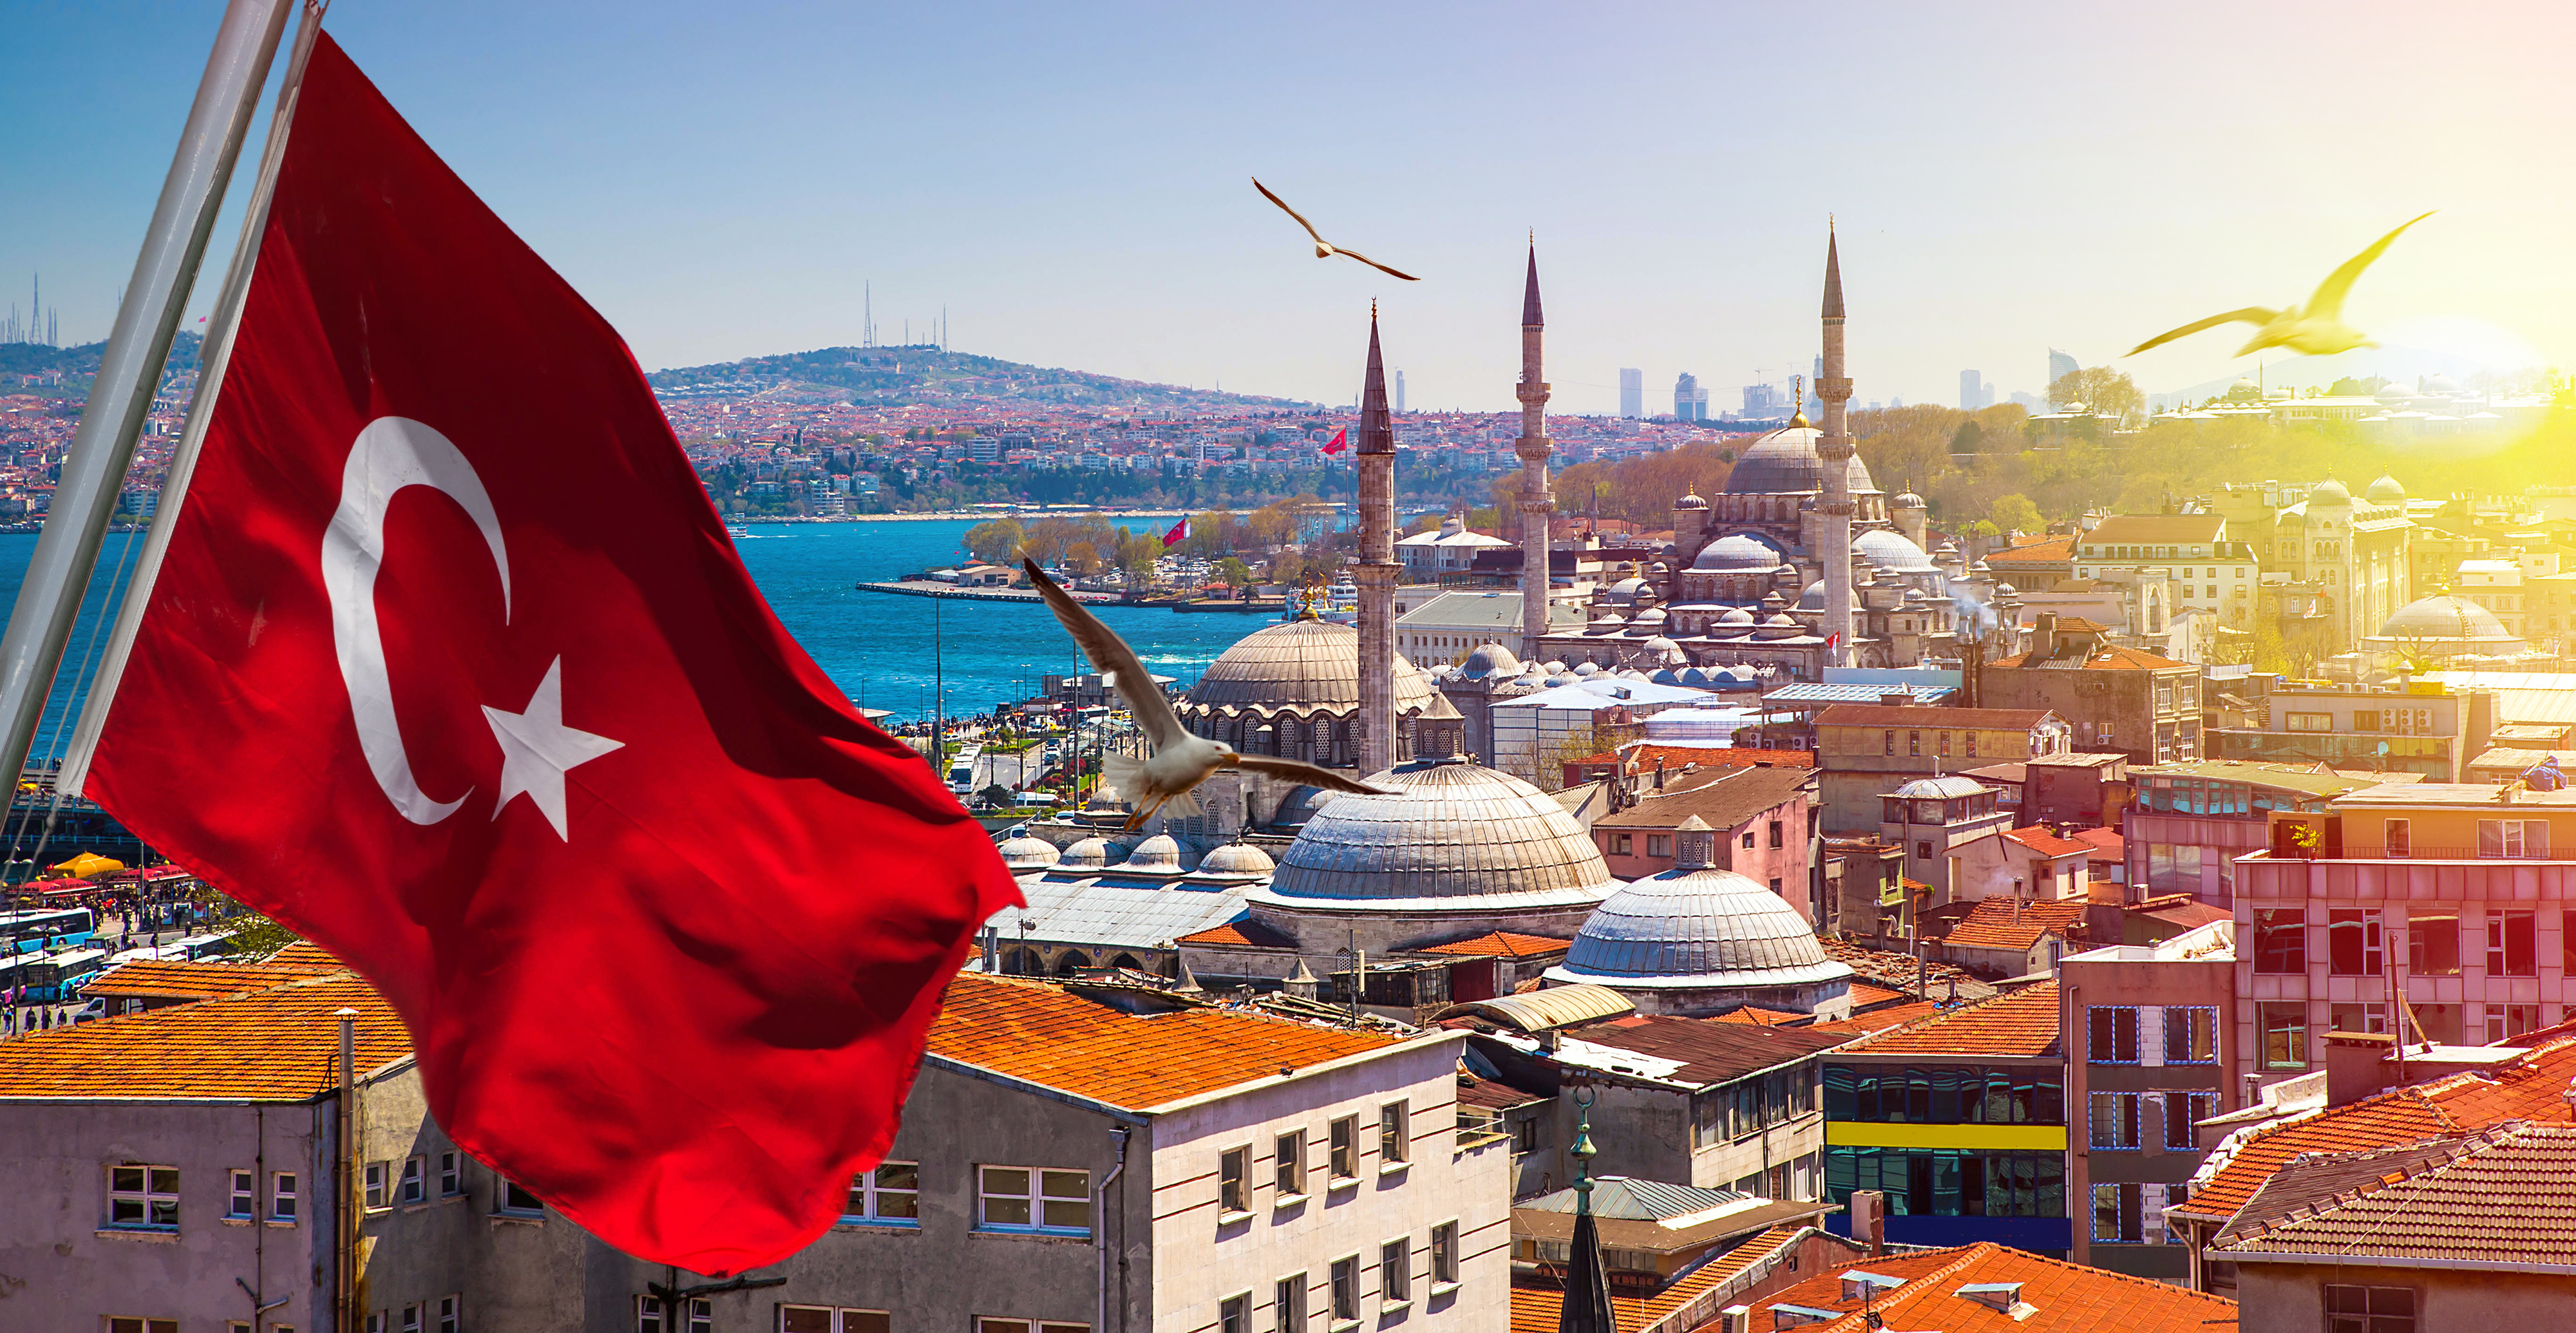 Tunisie et Turquie: comment distinguer les drapeaux ?